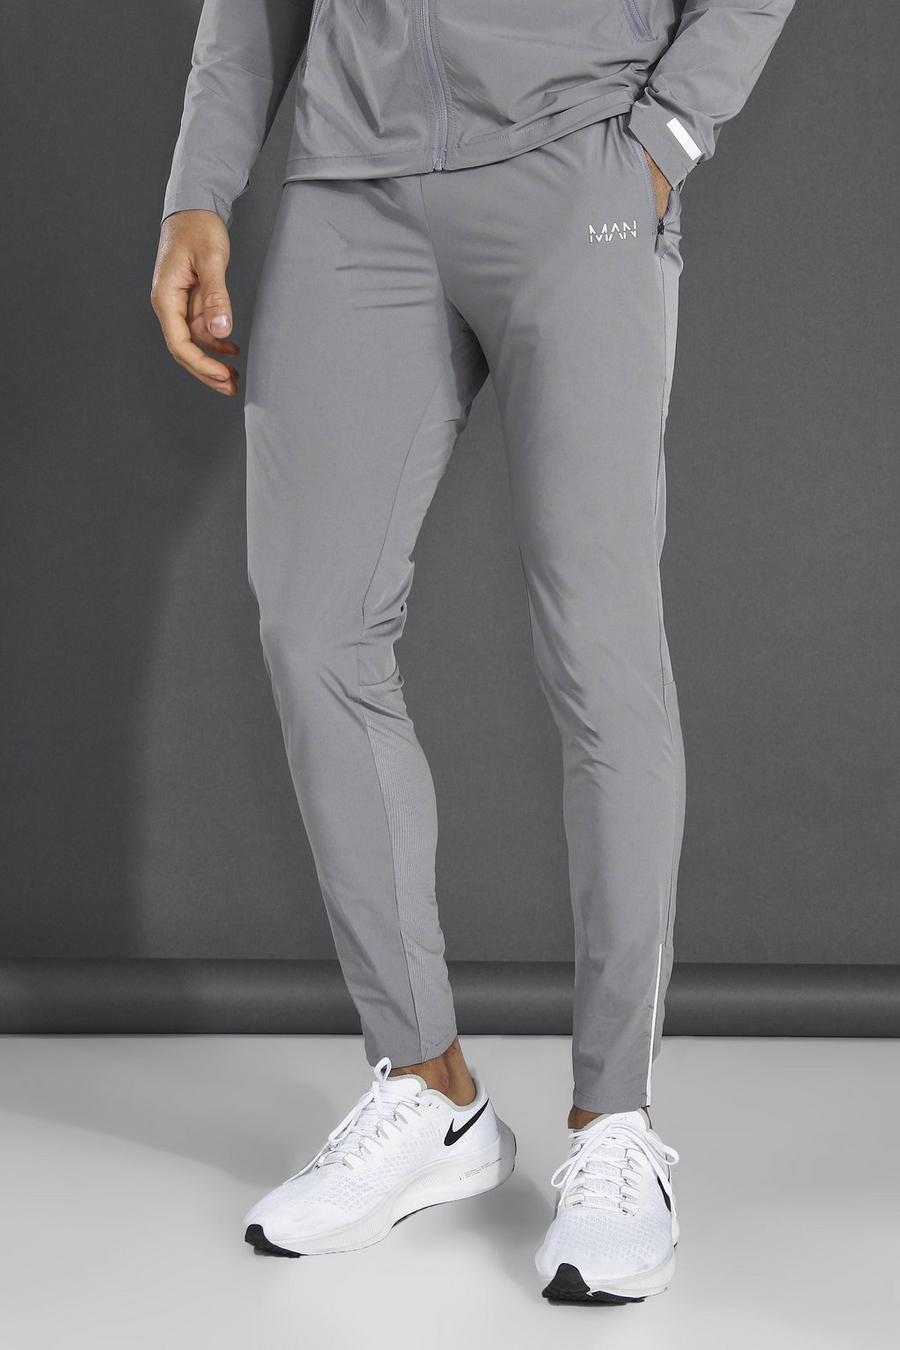 אפור gris מכנסי טרנינג ספורטיביים קלילים חלקים עם כיתוב Man